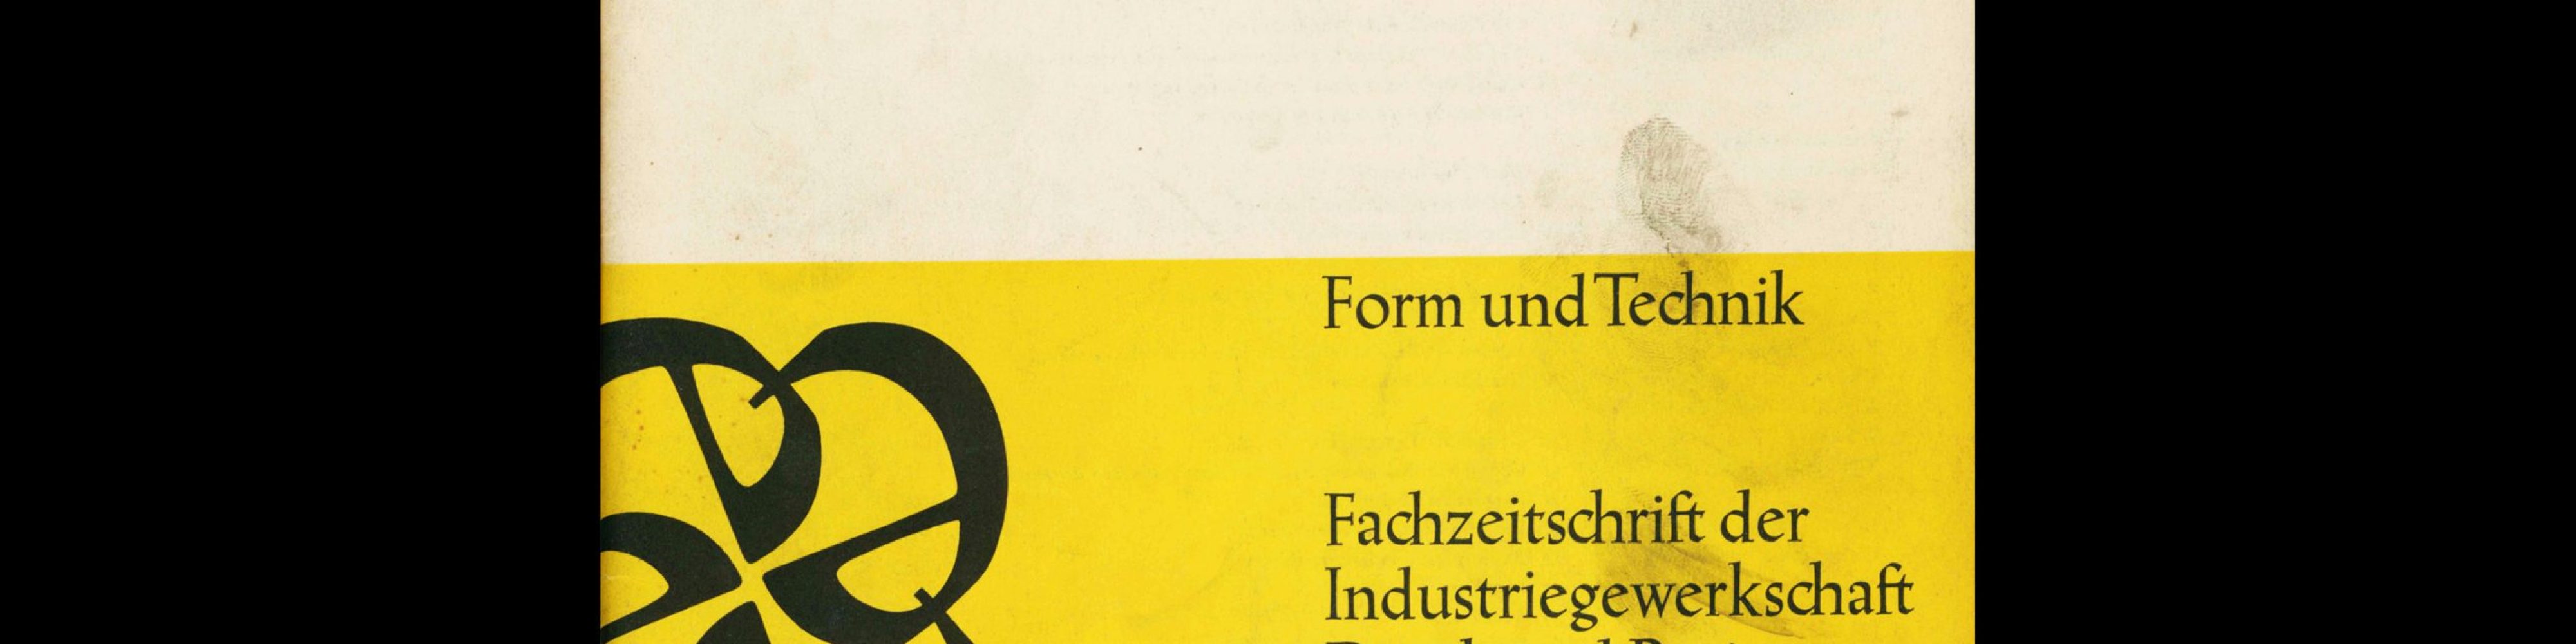 Form und Technik, 1, 1964